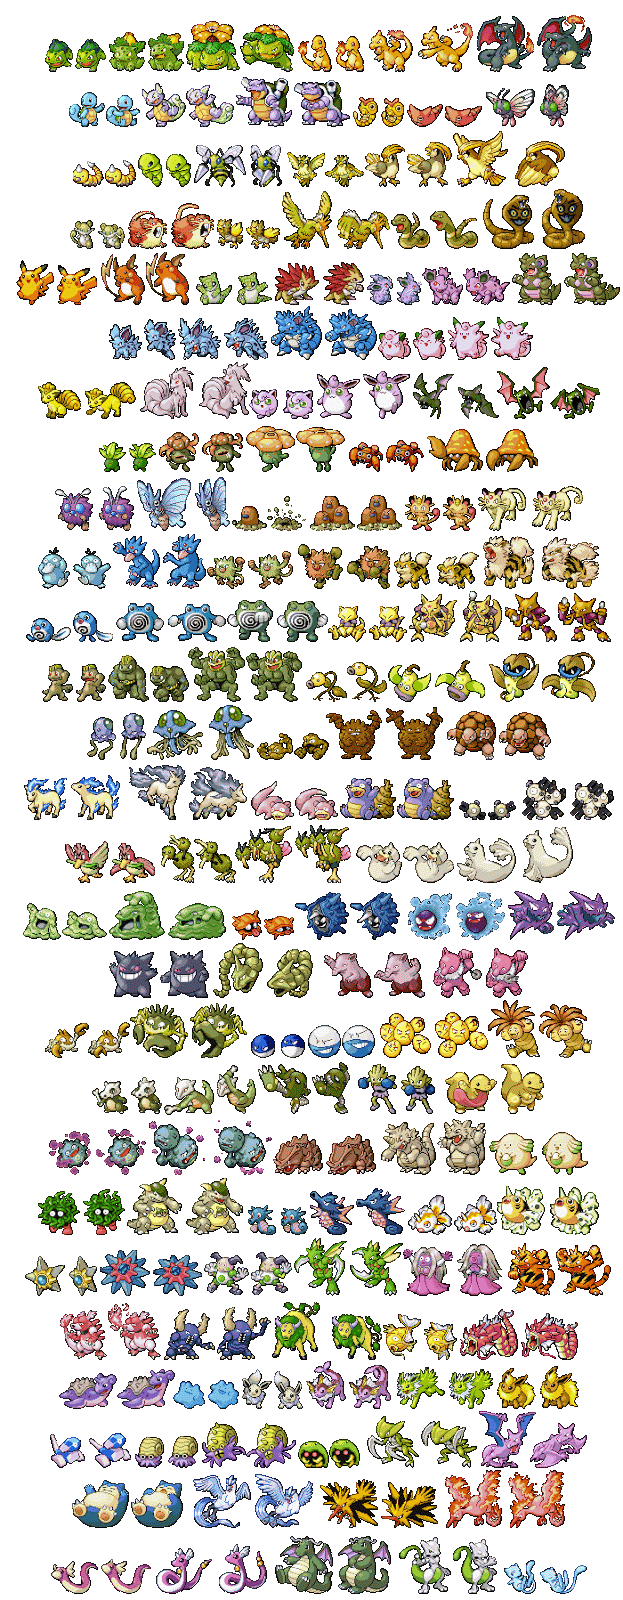 Vc conhece todos os Pokémons shinys de canto